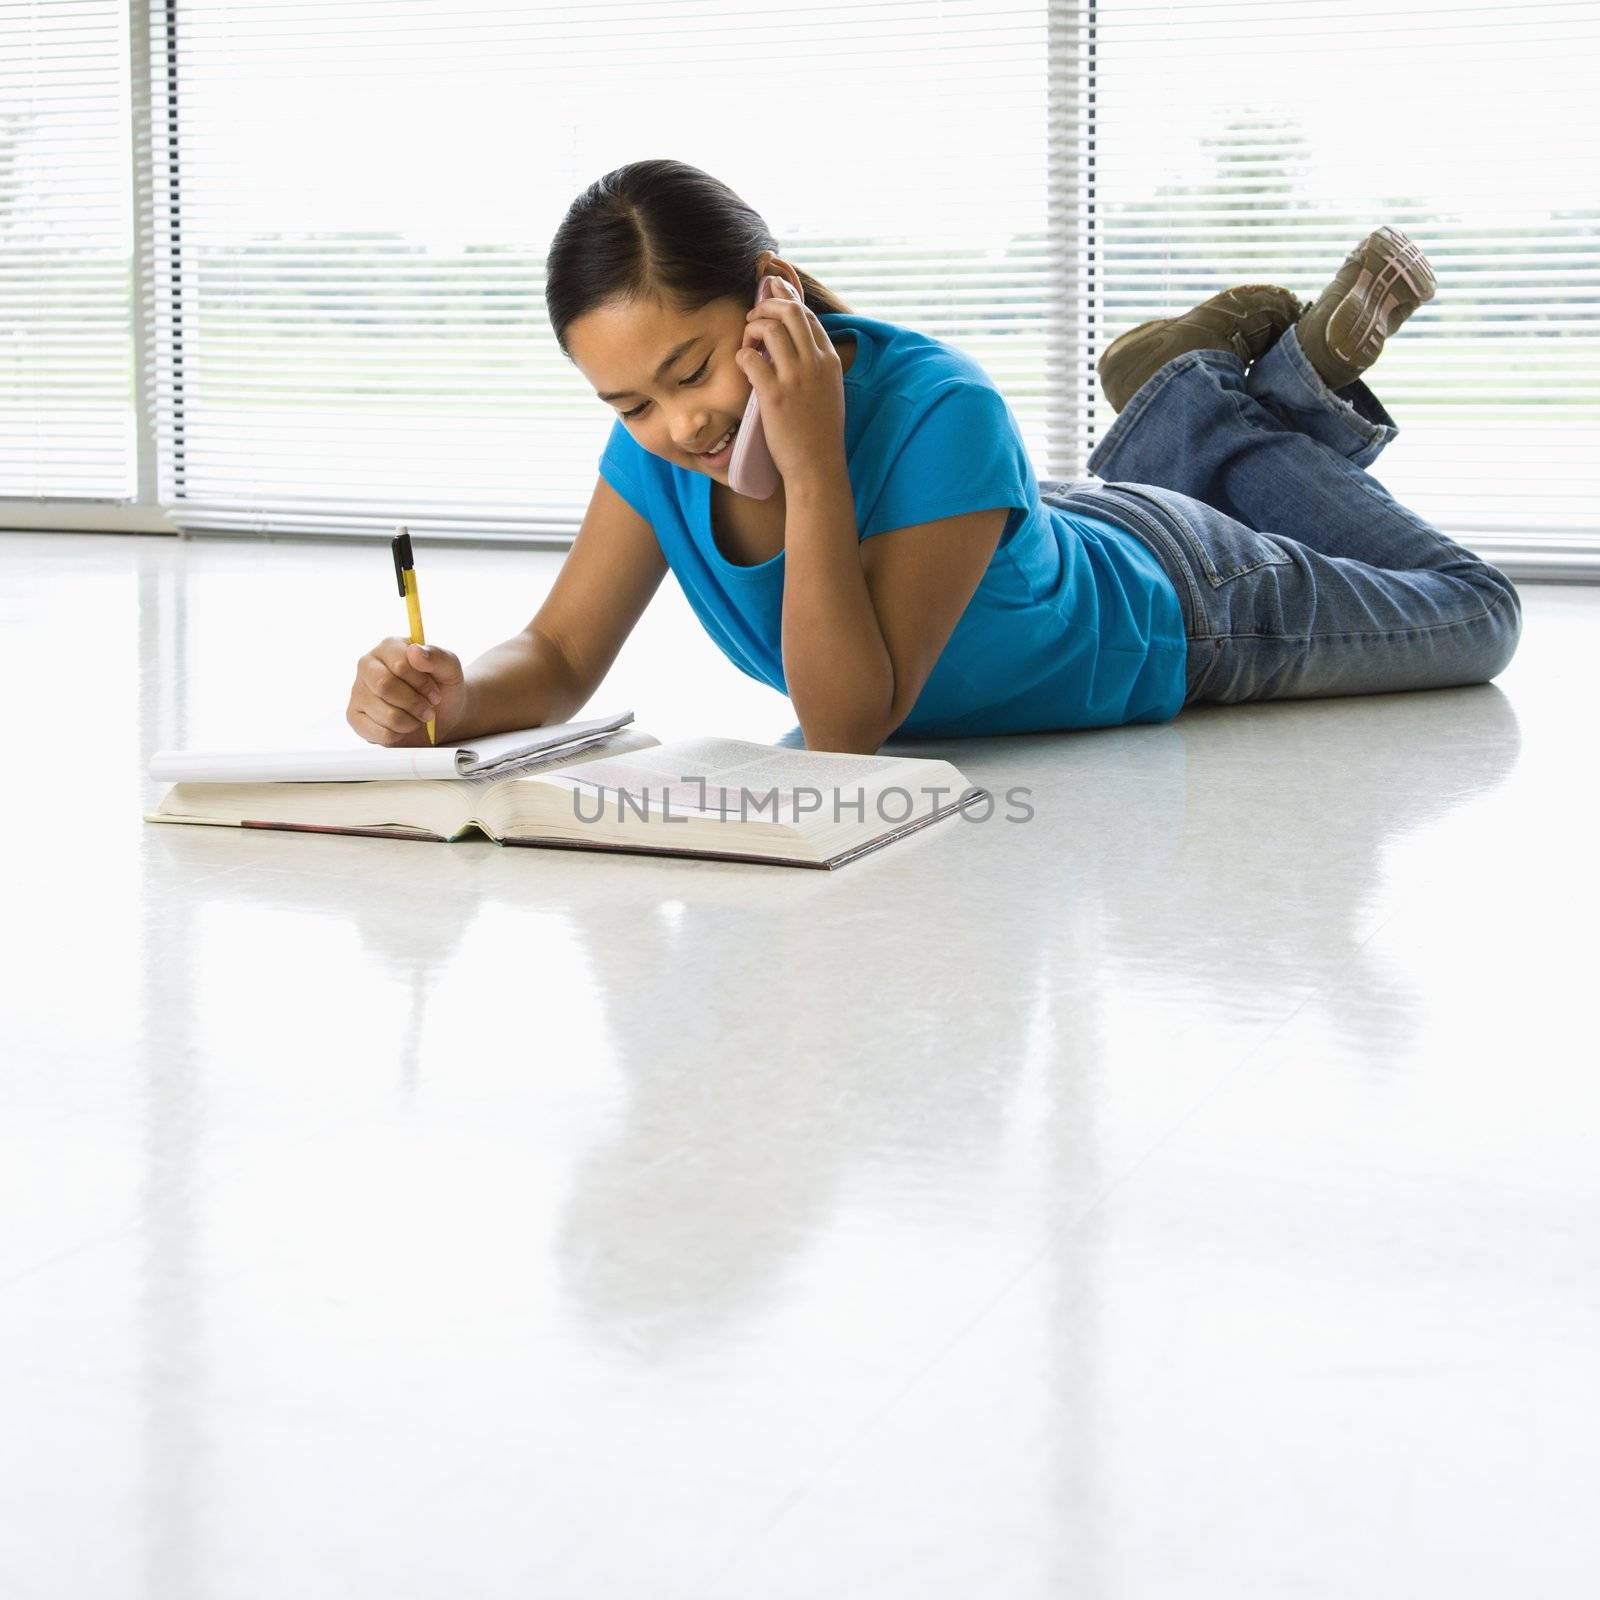 Asian preteen girl lying on floor doing homework while talking on cell phone.